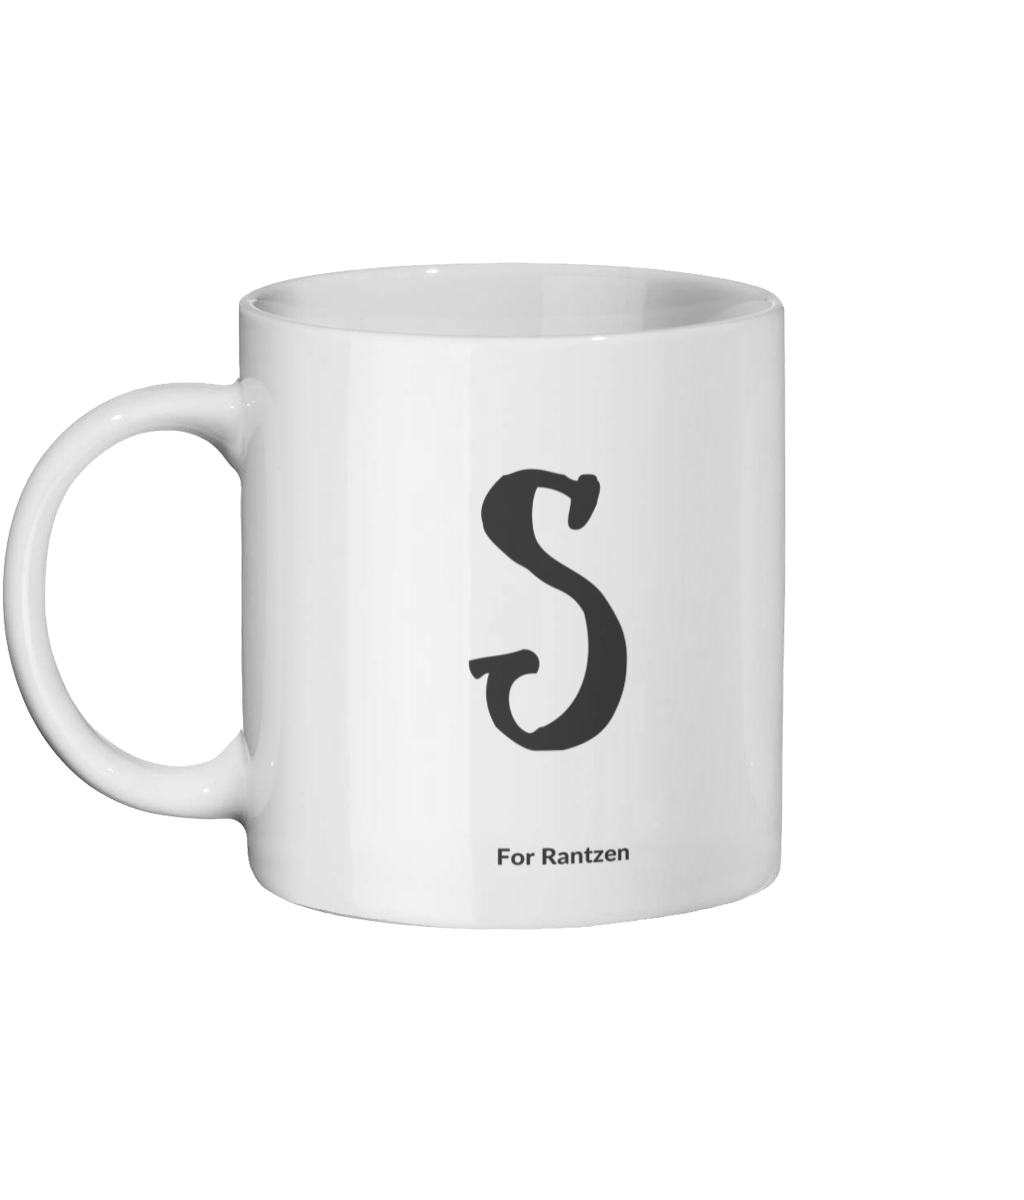 S for Rantzen Mug